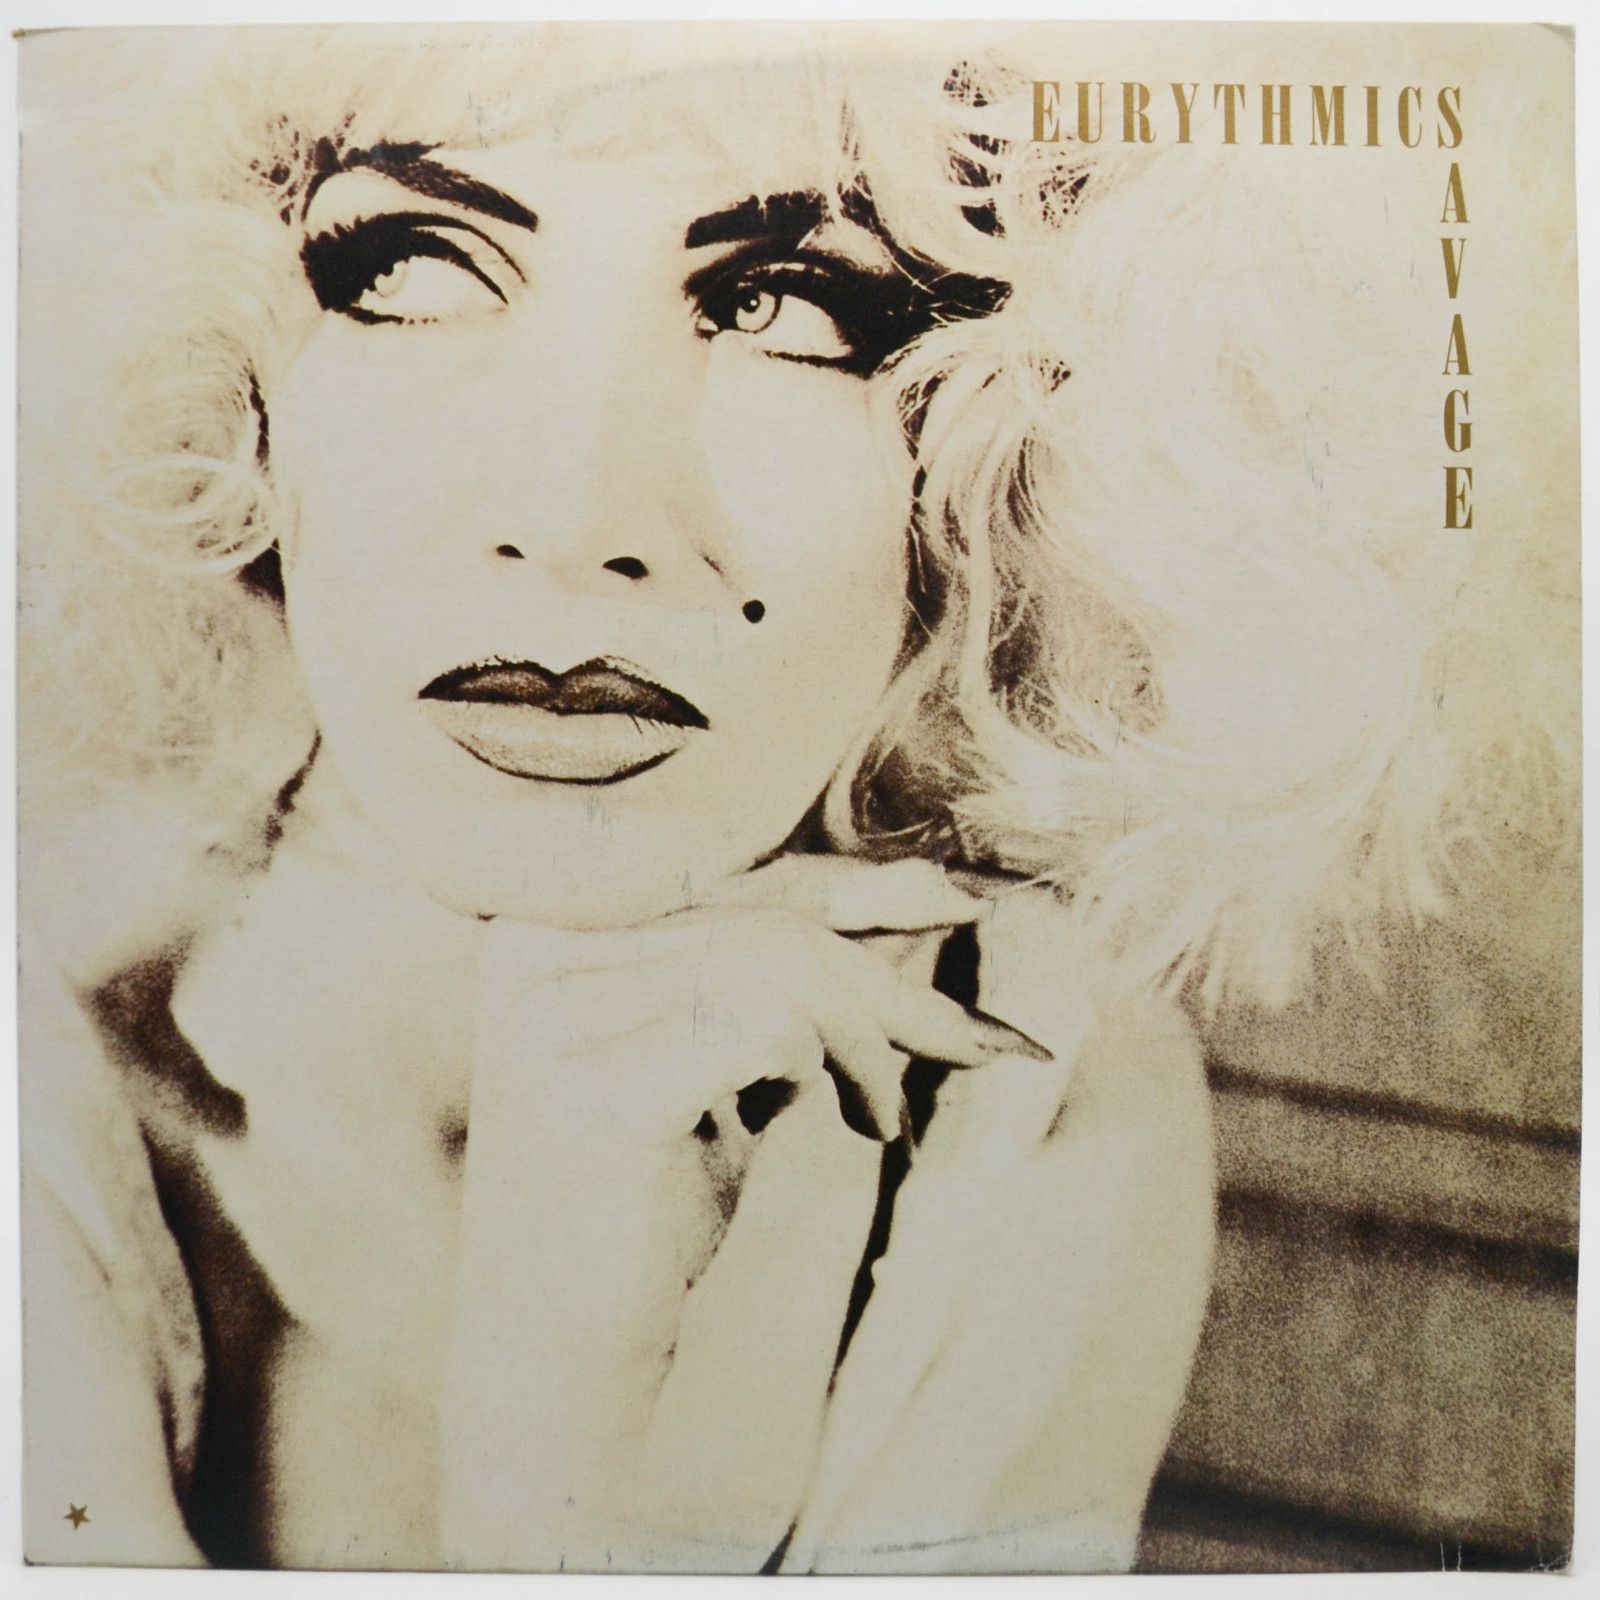 Eurythmics — Savage, 1987